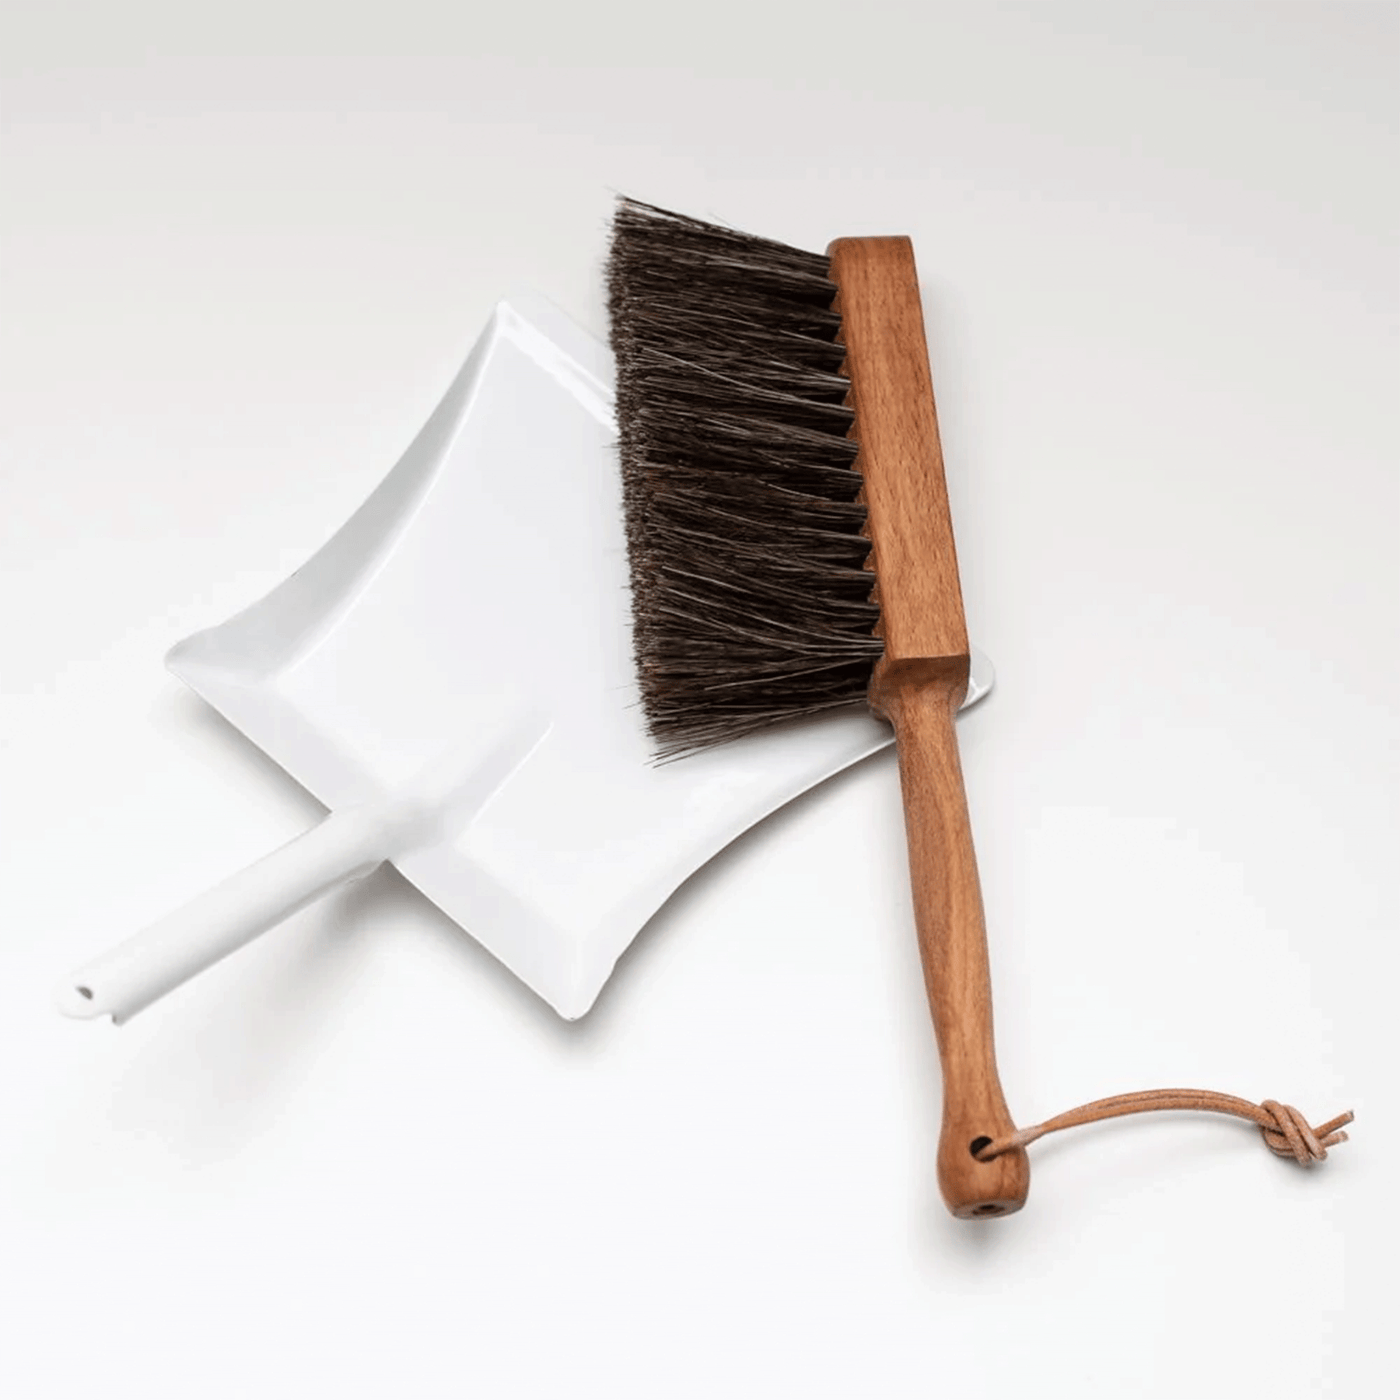 Bürstenhaus Redecker | Children's Dustpan and Broom